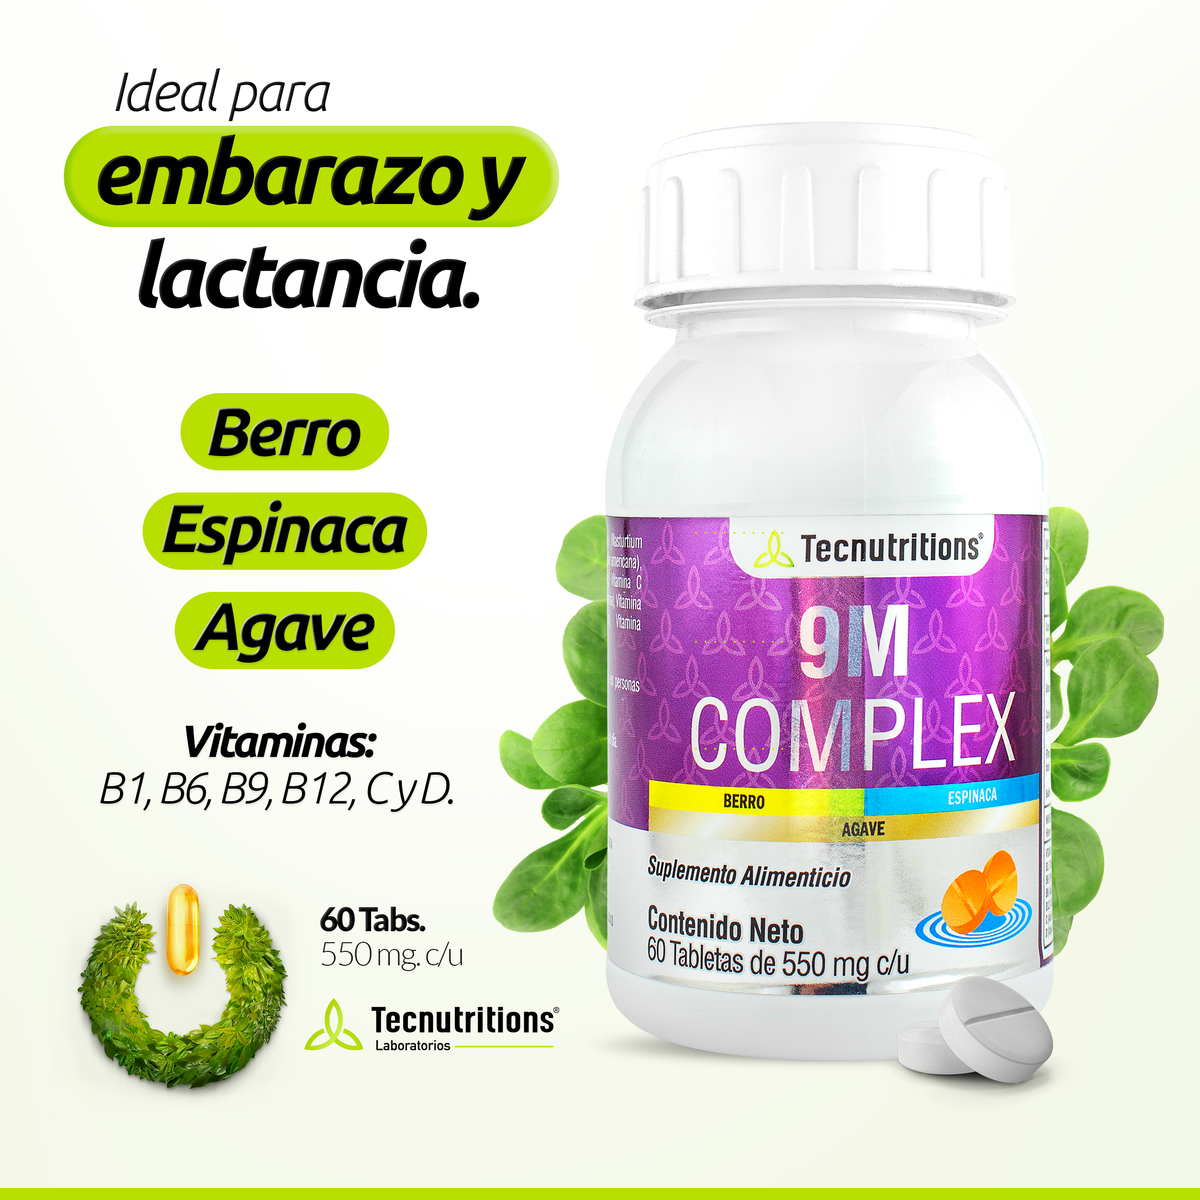 Suplemento alimenticio 9M Complex 60 tabs, con ácido fólico, vitamina c, embarazo y lactancia